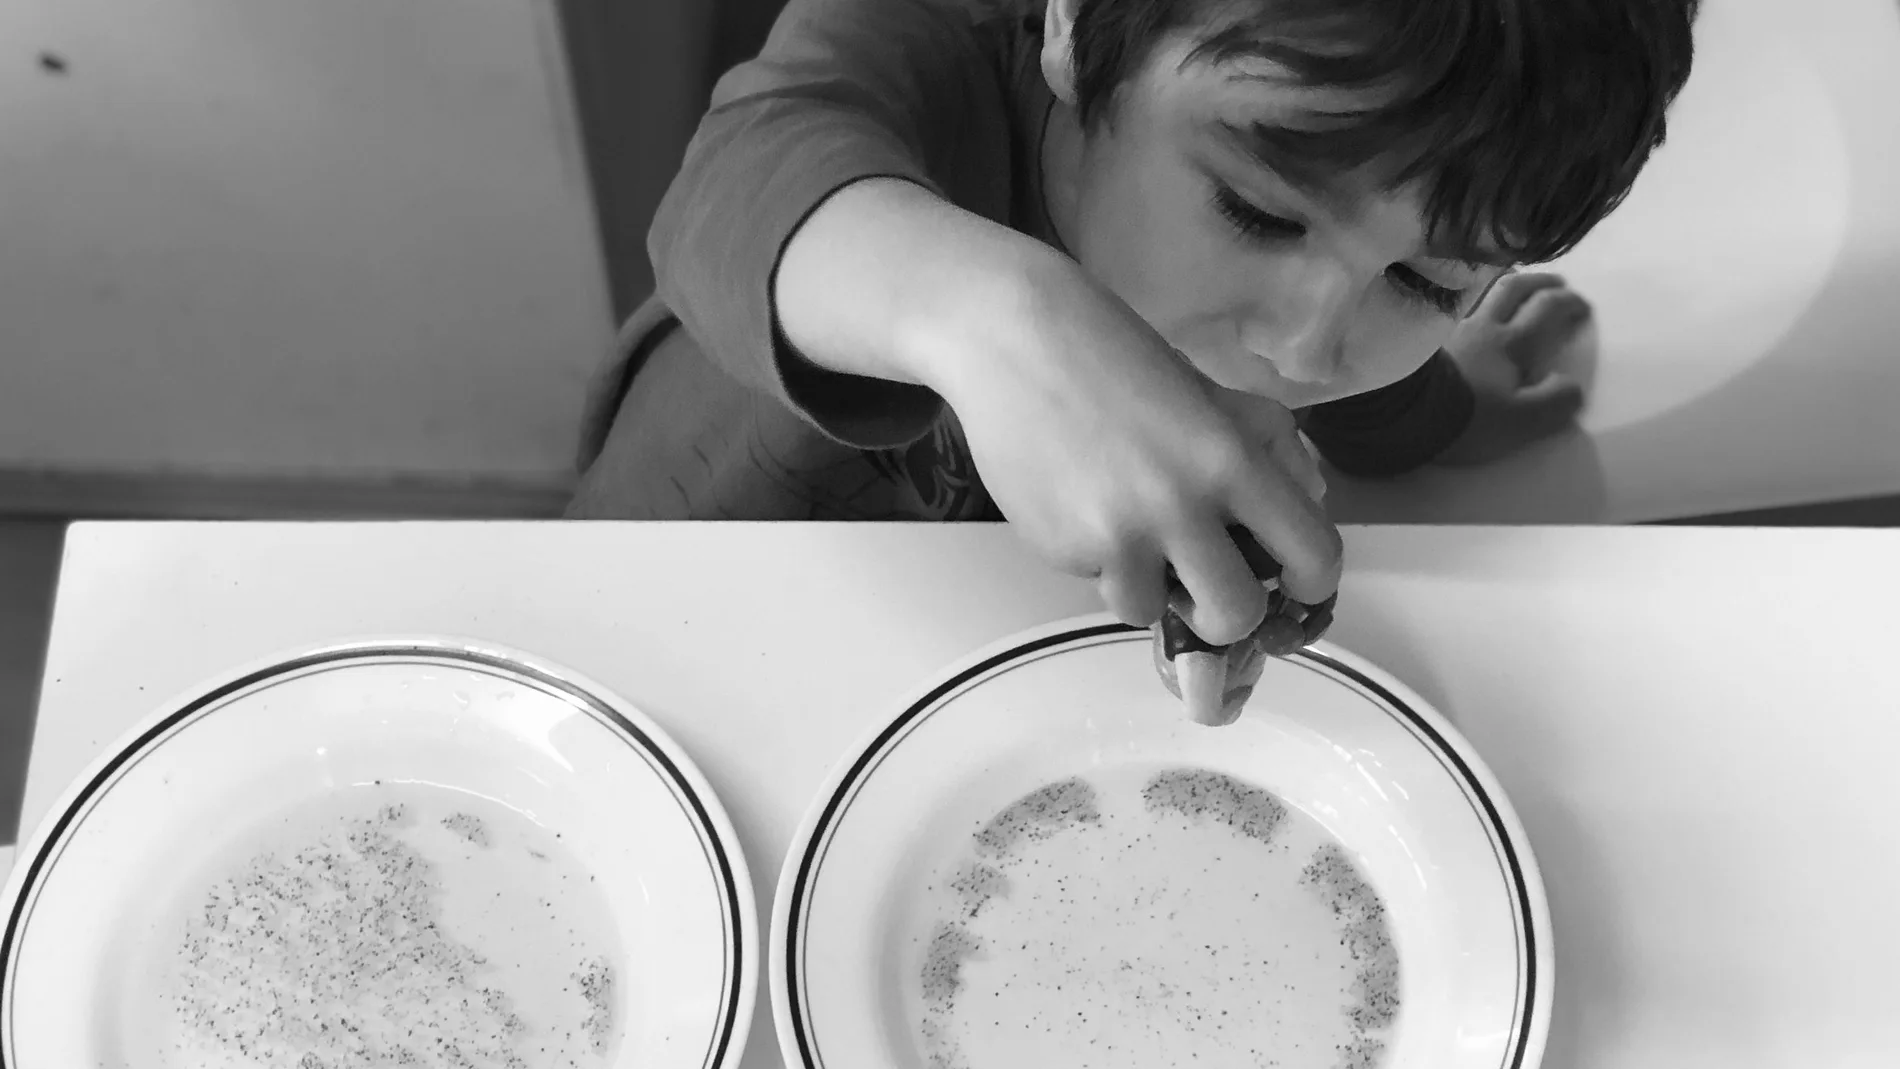 El experimento de la pimienta que huye sirve a los niños para imaginar cómo actúan los virus cuando te lavas las manos con jabón